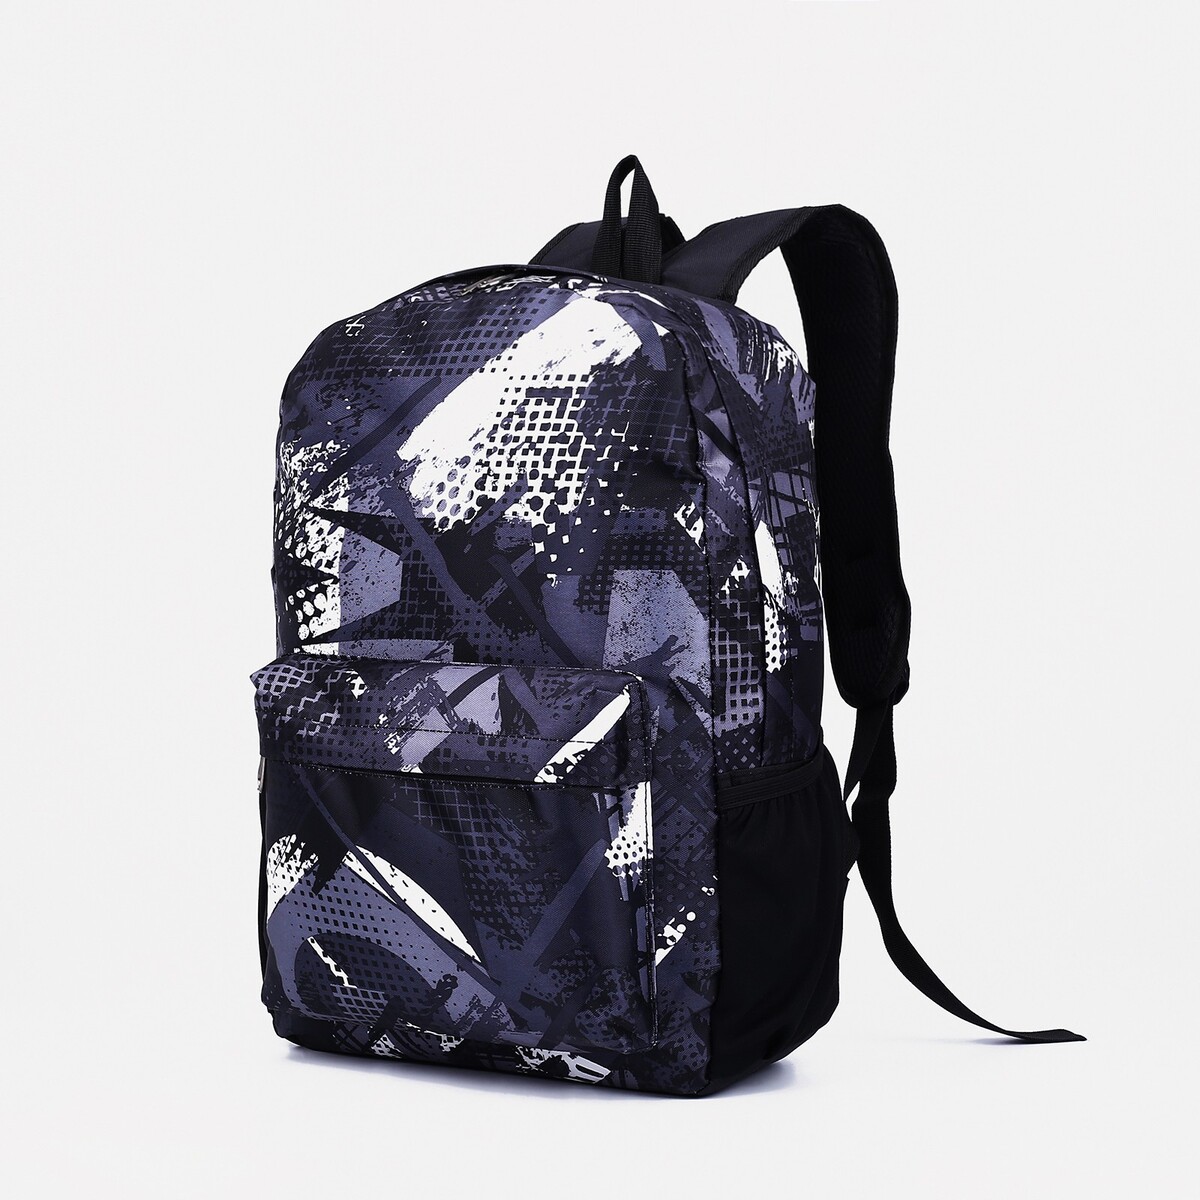 Рюкзак школьный из текстиля на молнии, наружный карман, цвет серый/черный